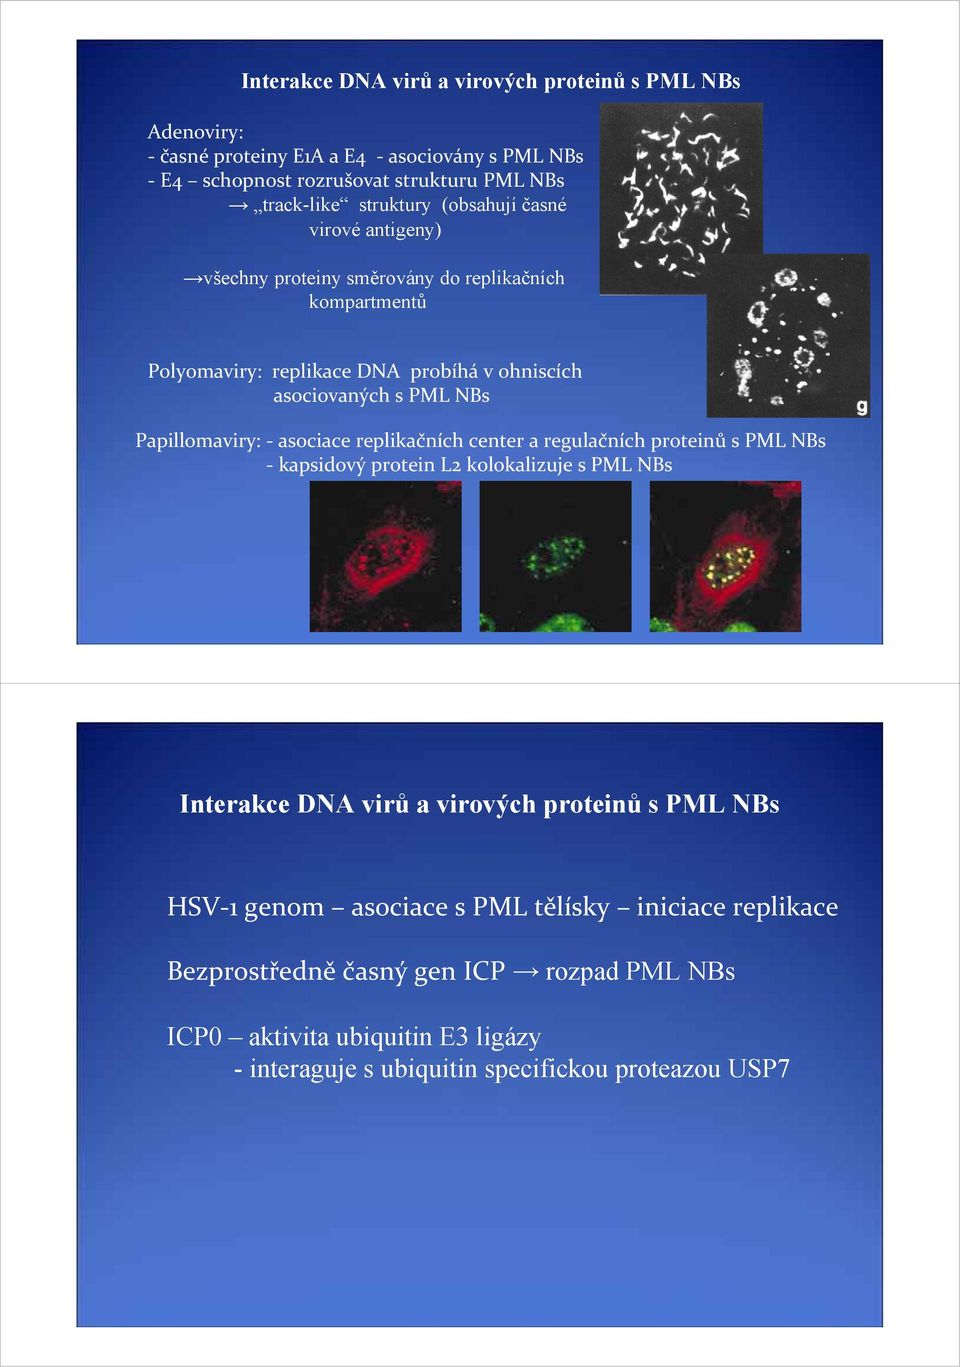 Papillomaviry: asociace replikačních center a regulačních proteinů s PML NBs kapsidový protein L2 kolokalizuje s PML NBs Interakce DNA virů a virových proteinů s PML NBs